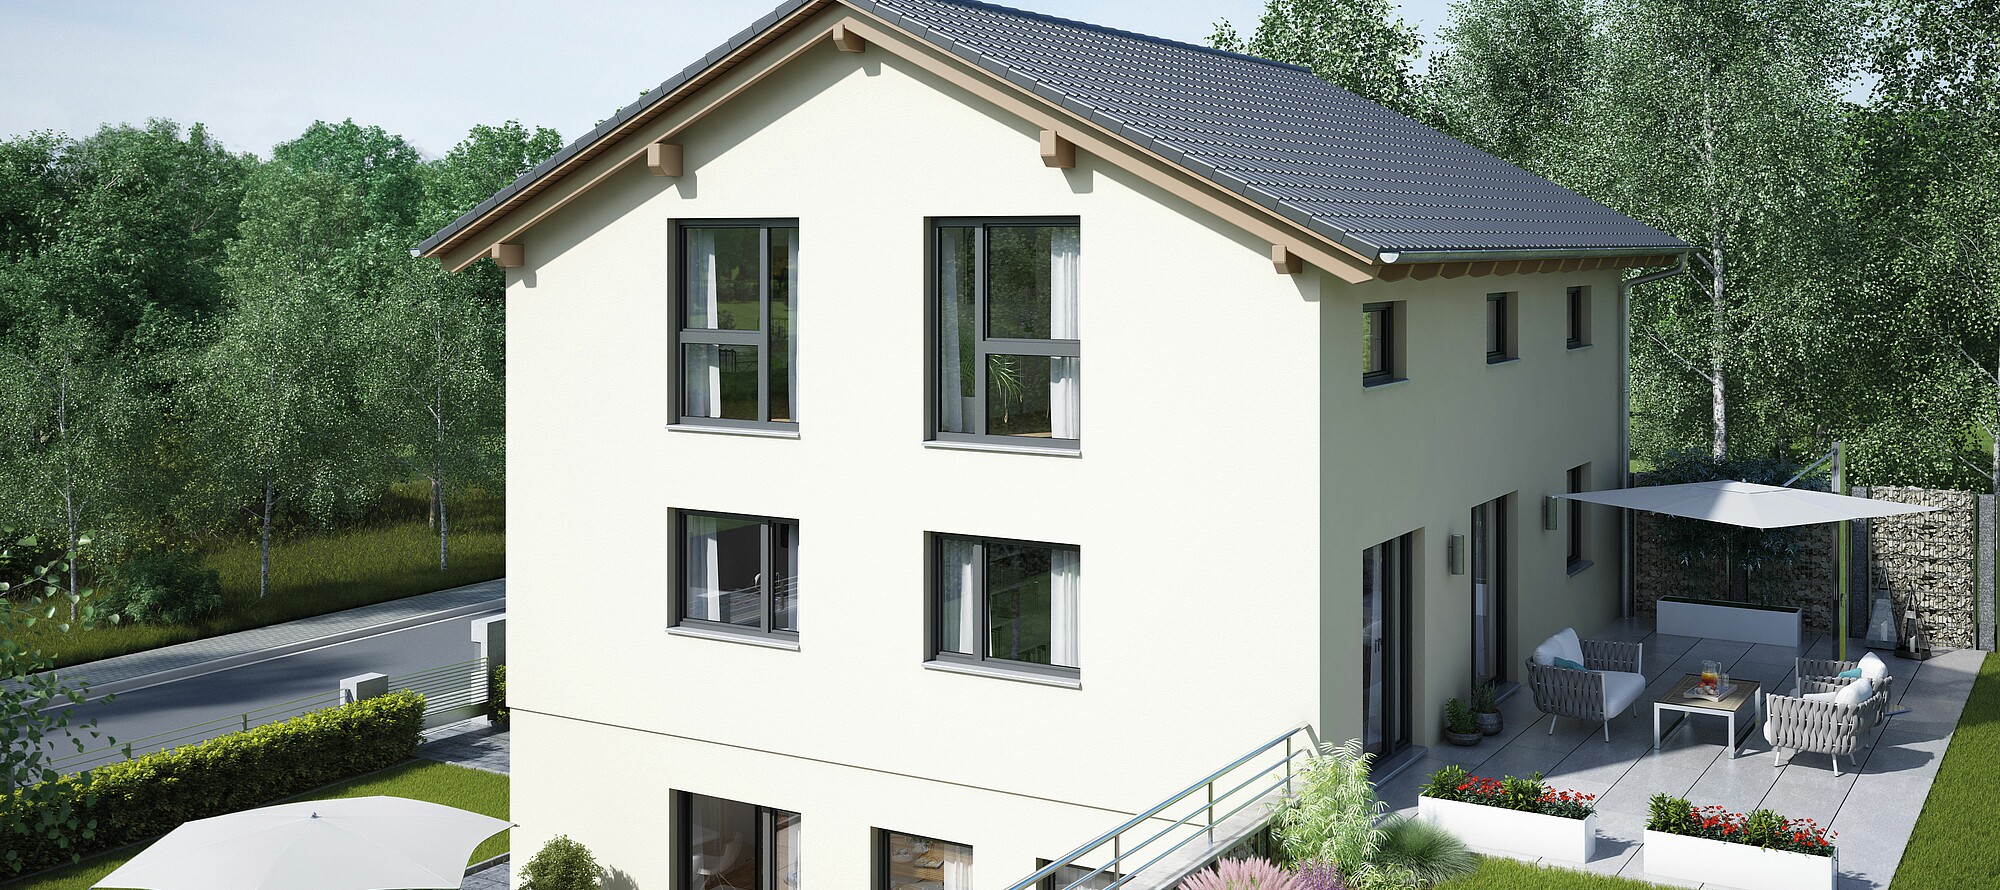 VARIANT - Einfamilienhaus mit Satteldach als Fertighaus von Hanse Haus